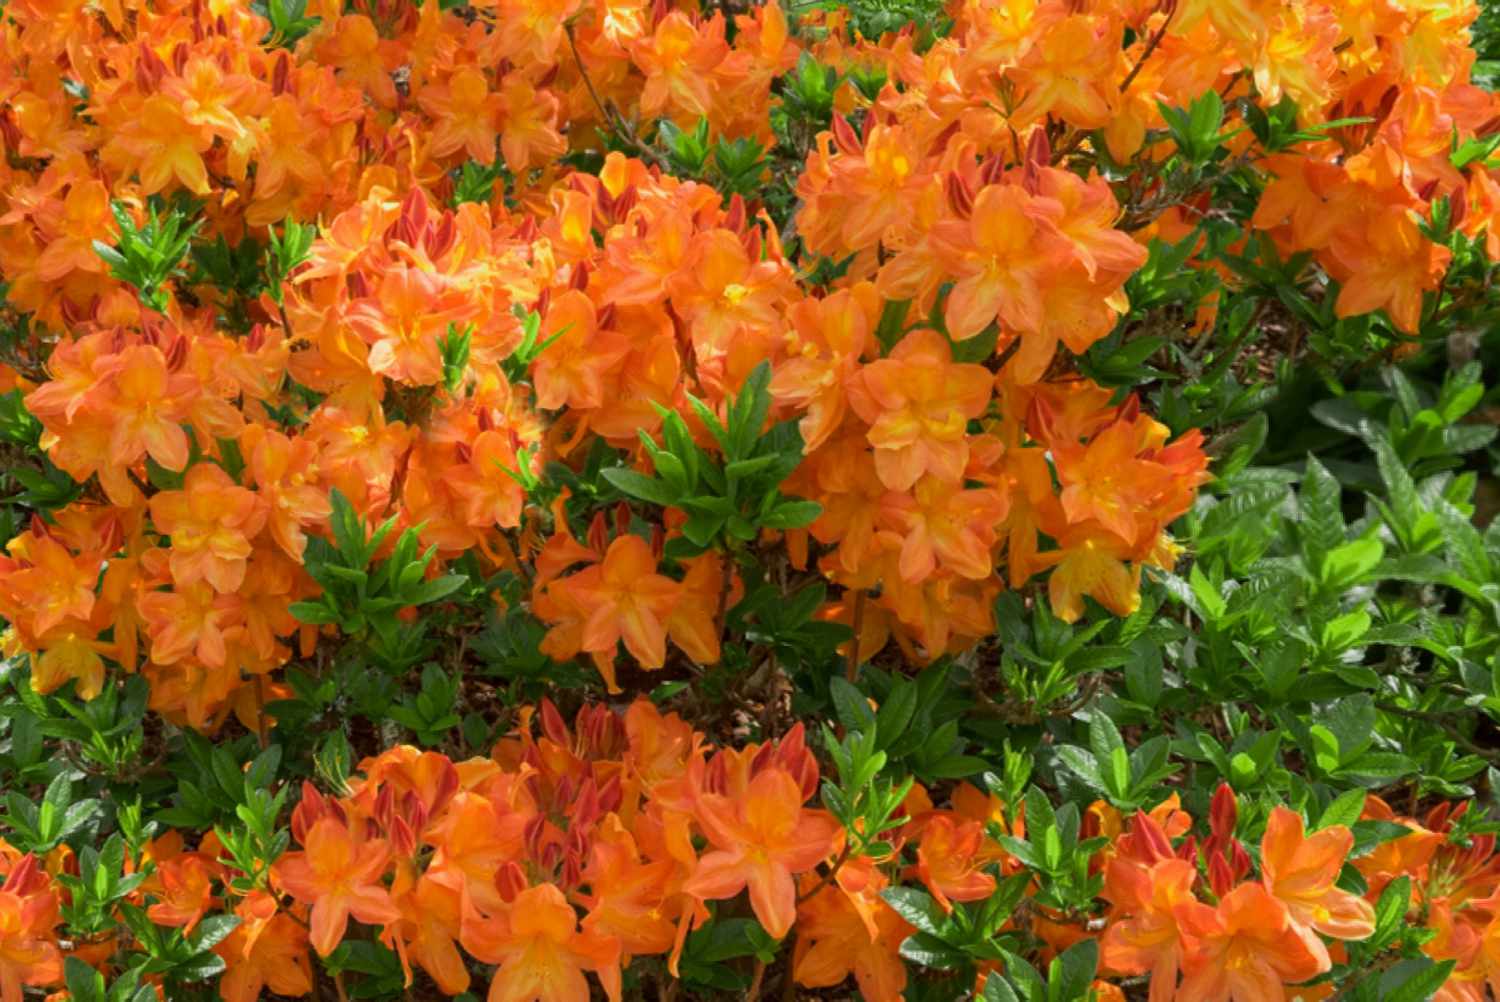 Gibraltar azalea flowering shrub with orange funnel-like petal tresses surrounded by leaves